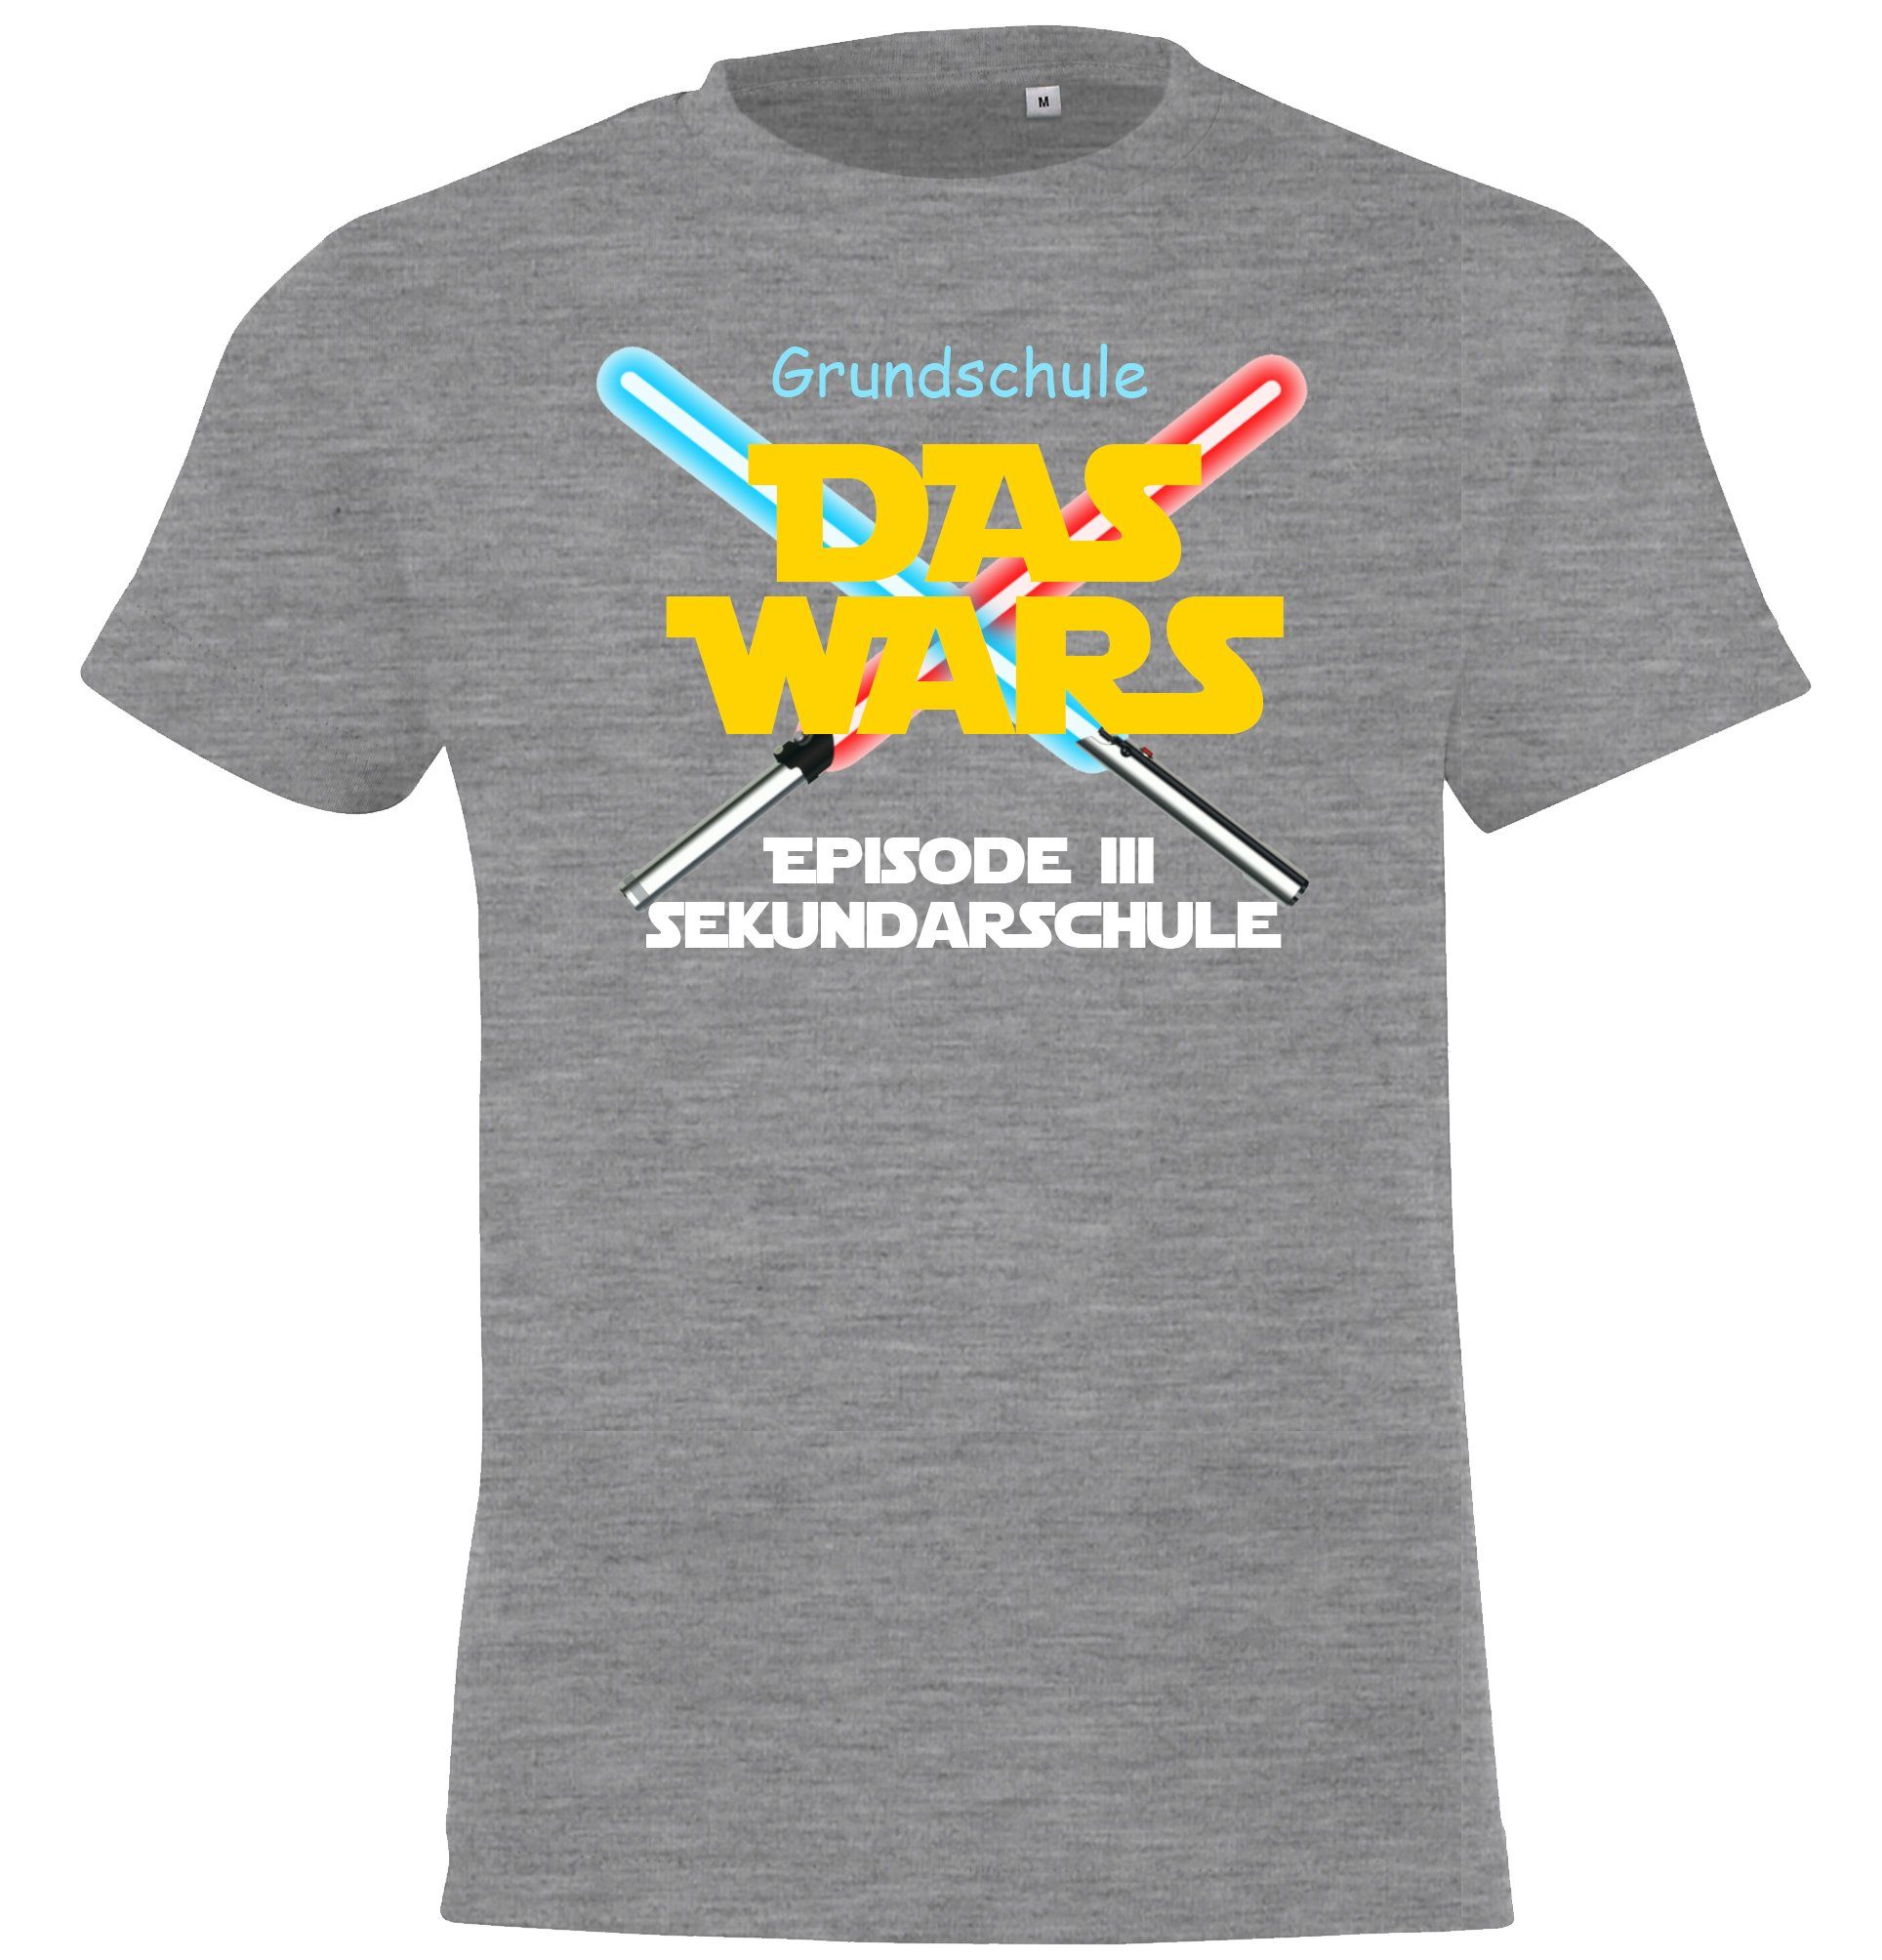 Youth T-Shirt Grau Kinder Grundschule Motiv mit Designz der Schulzeit lustigem Shirt Das Wars